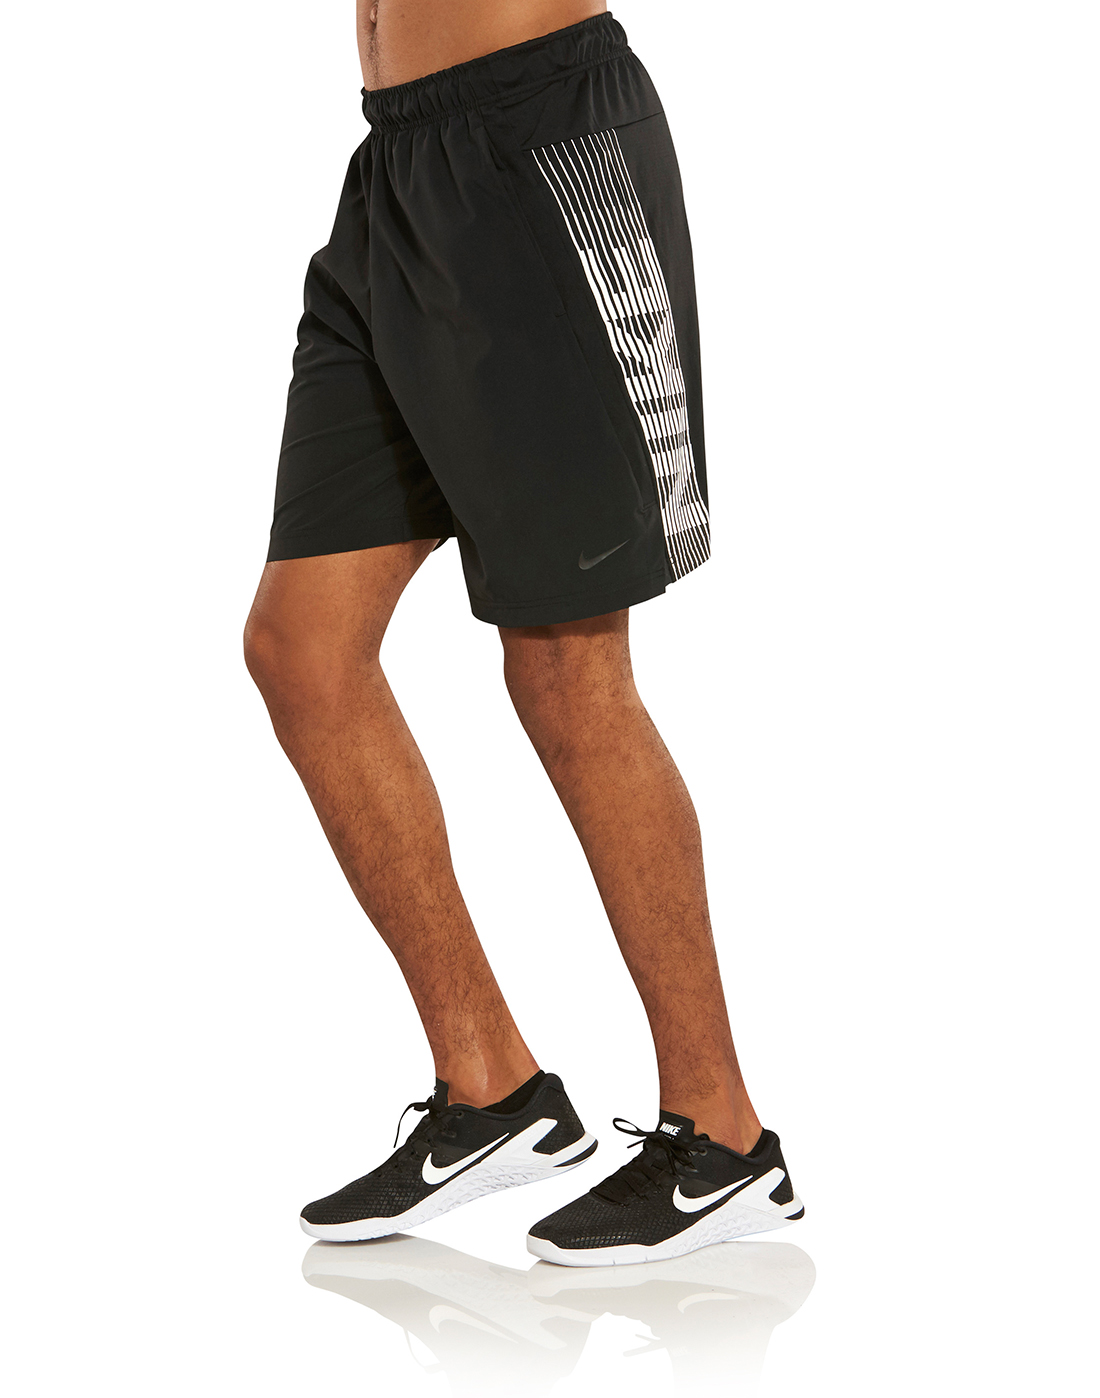 Nike Mens Dry 4.0 Shorts - Black | Life Style Sports UK